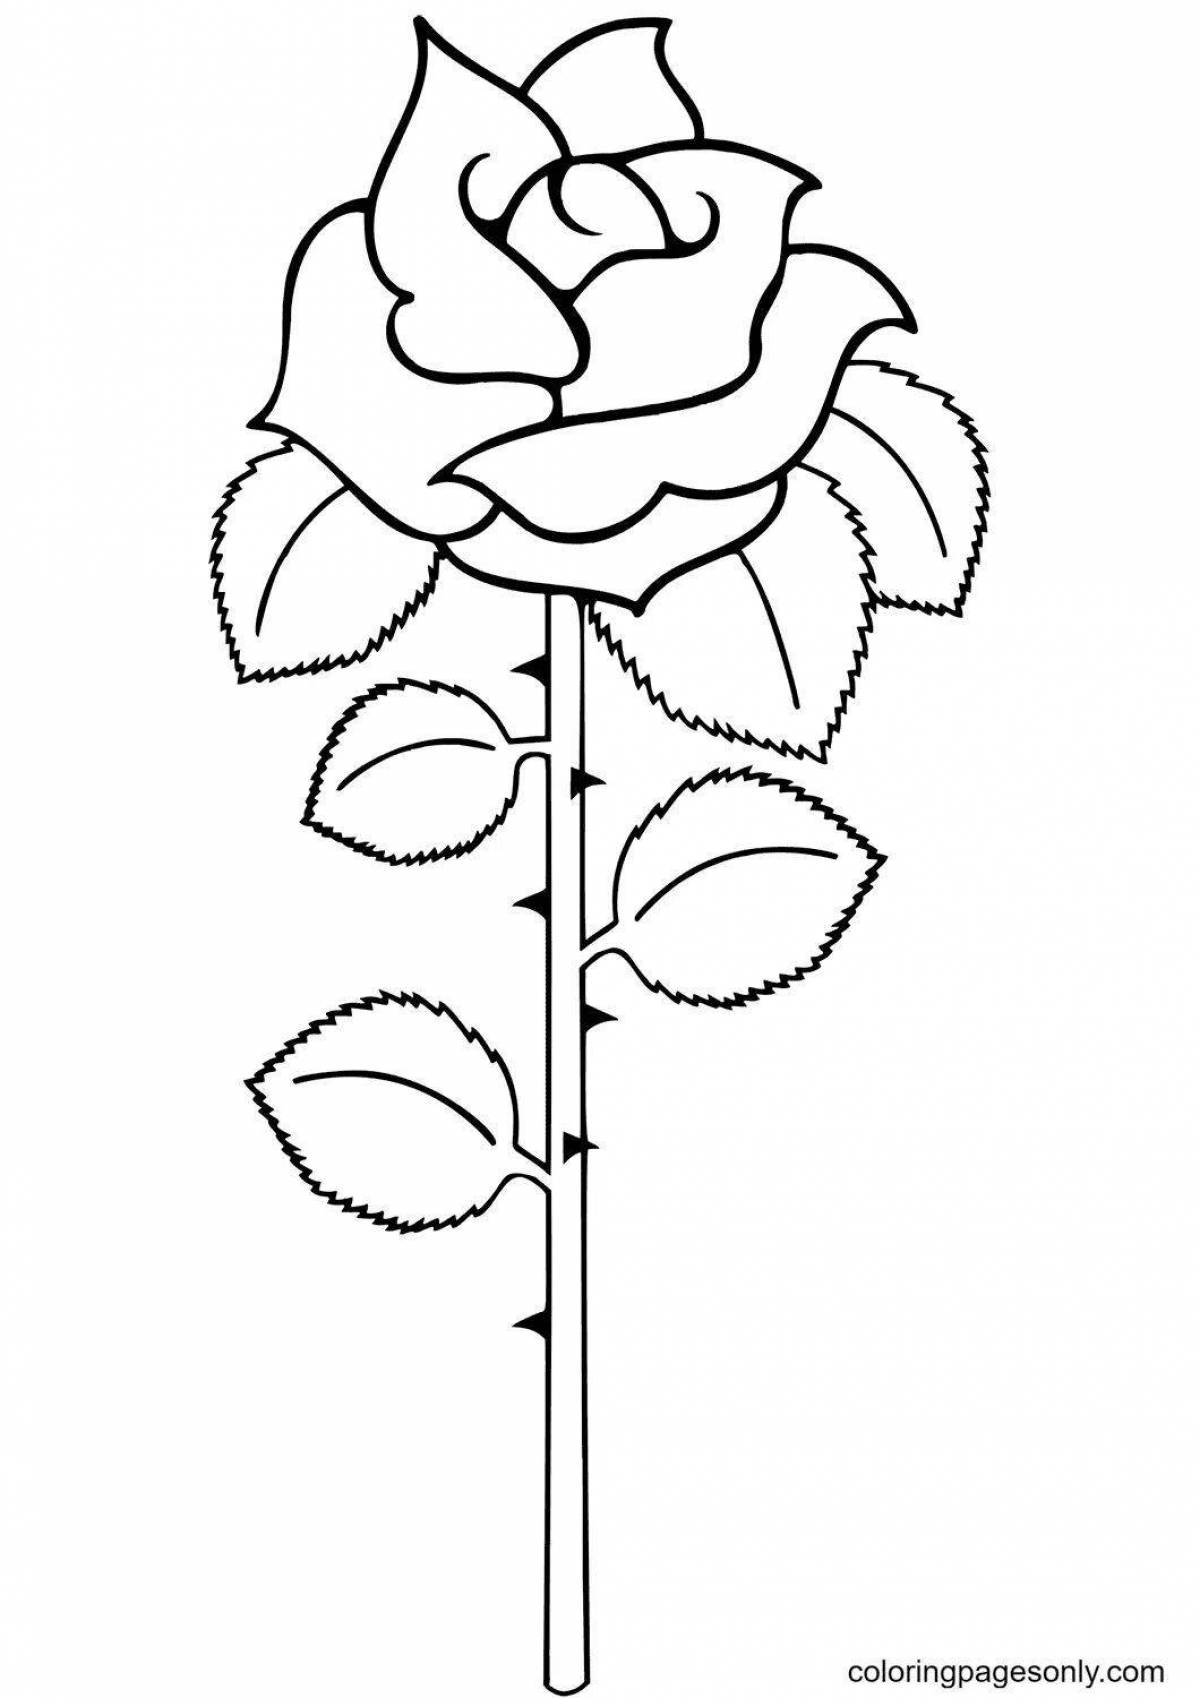 Игривая раскраска розы для детей 5-6 лет